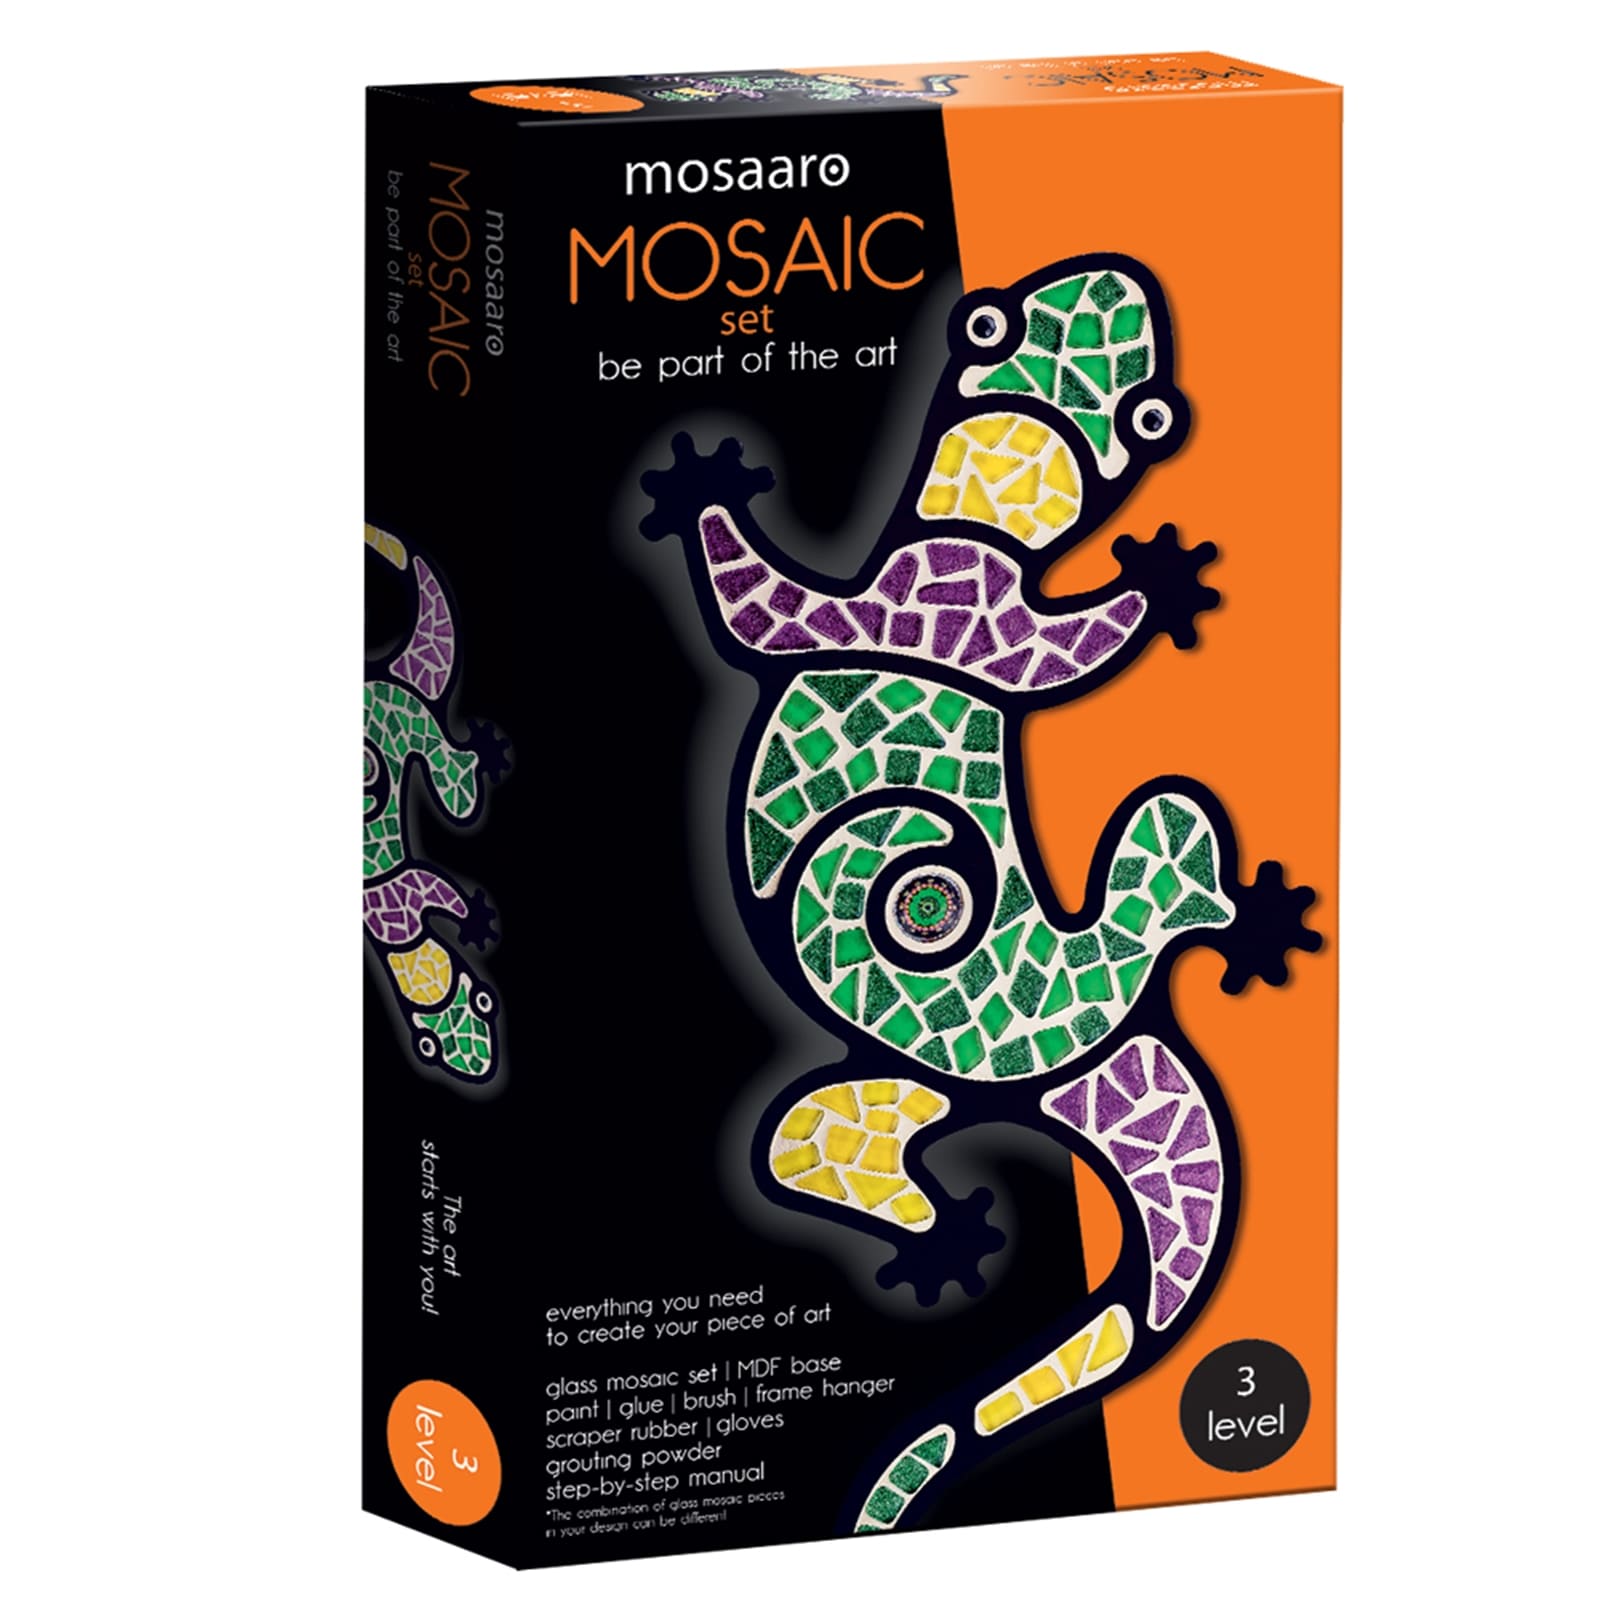 MOSAARO Mosaikset Echse Level 3